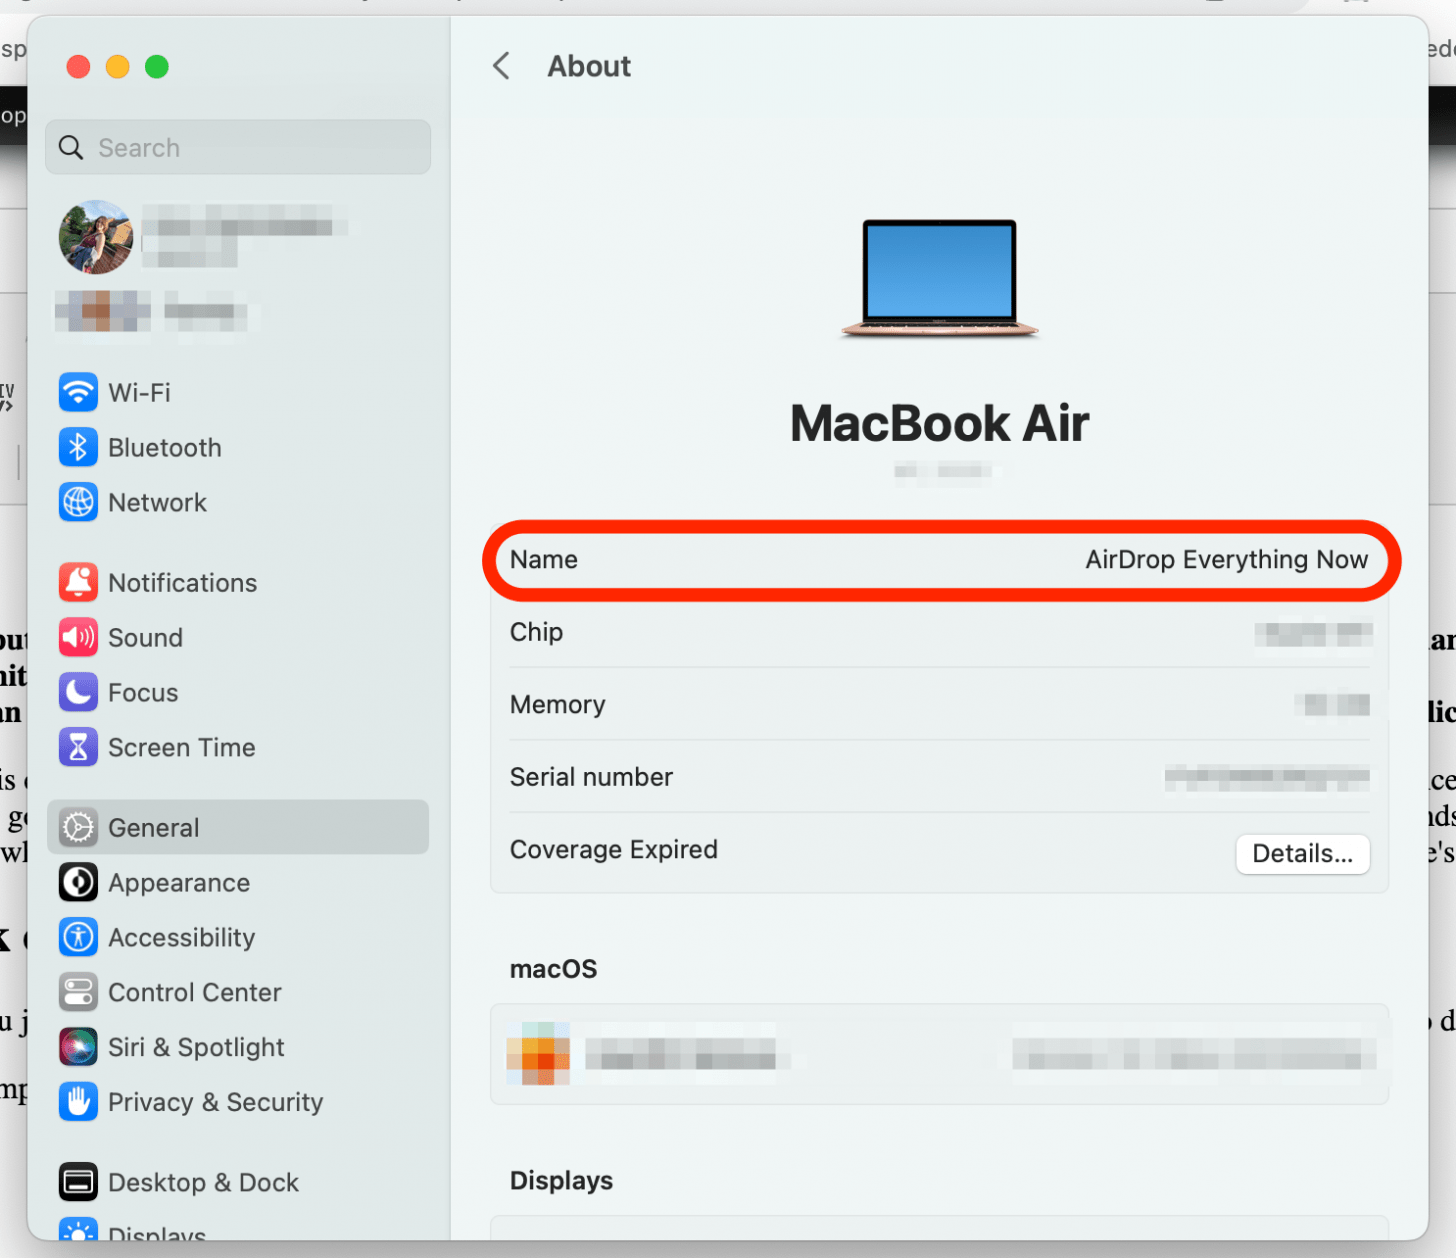 cliquez lorsque vous avez terminé, changez le nom du macbook